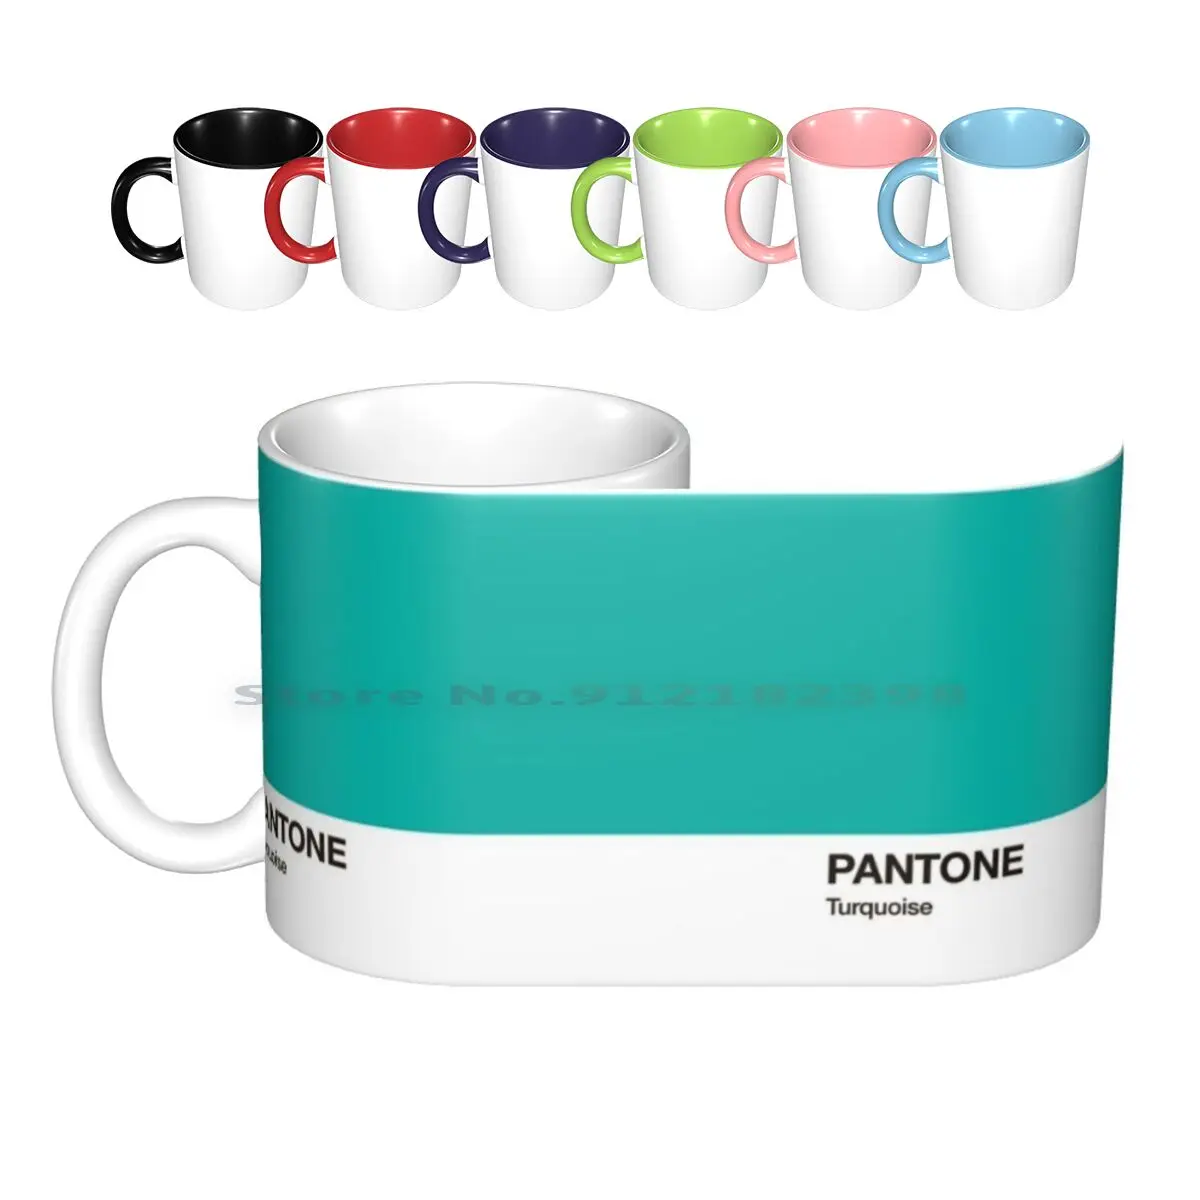 

Цвета Пантон бирюзовый. Цвет 2010 года. Керамические кружки, кофейные чашки, Кружка для молока и чая, бирюзовый графический дизайн Пантон